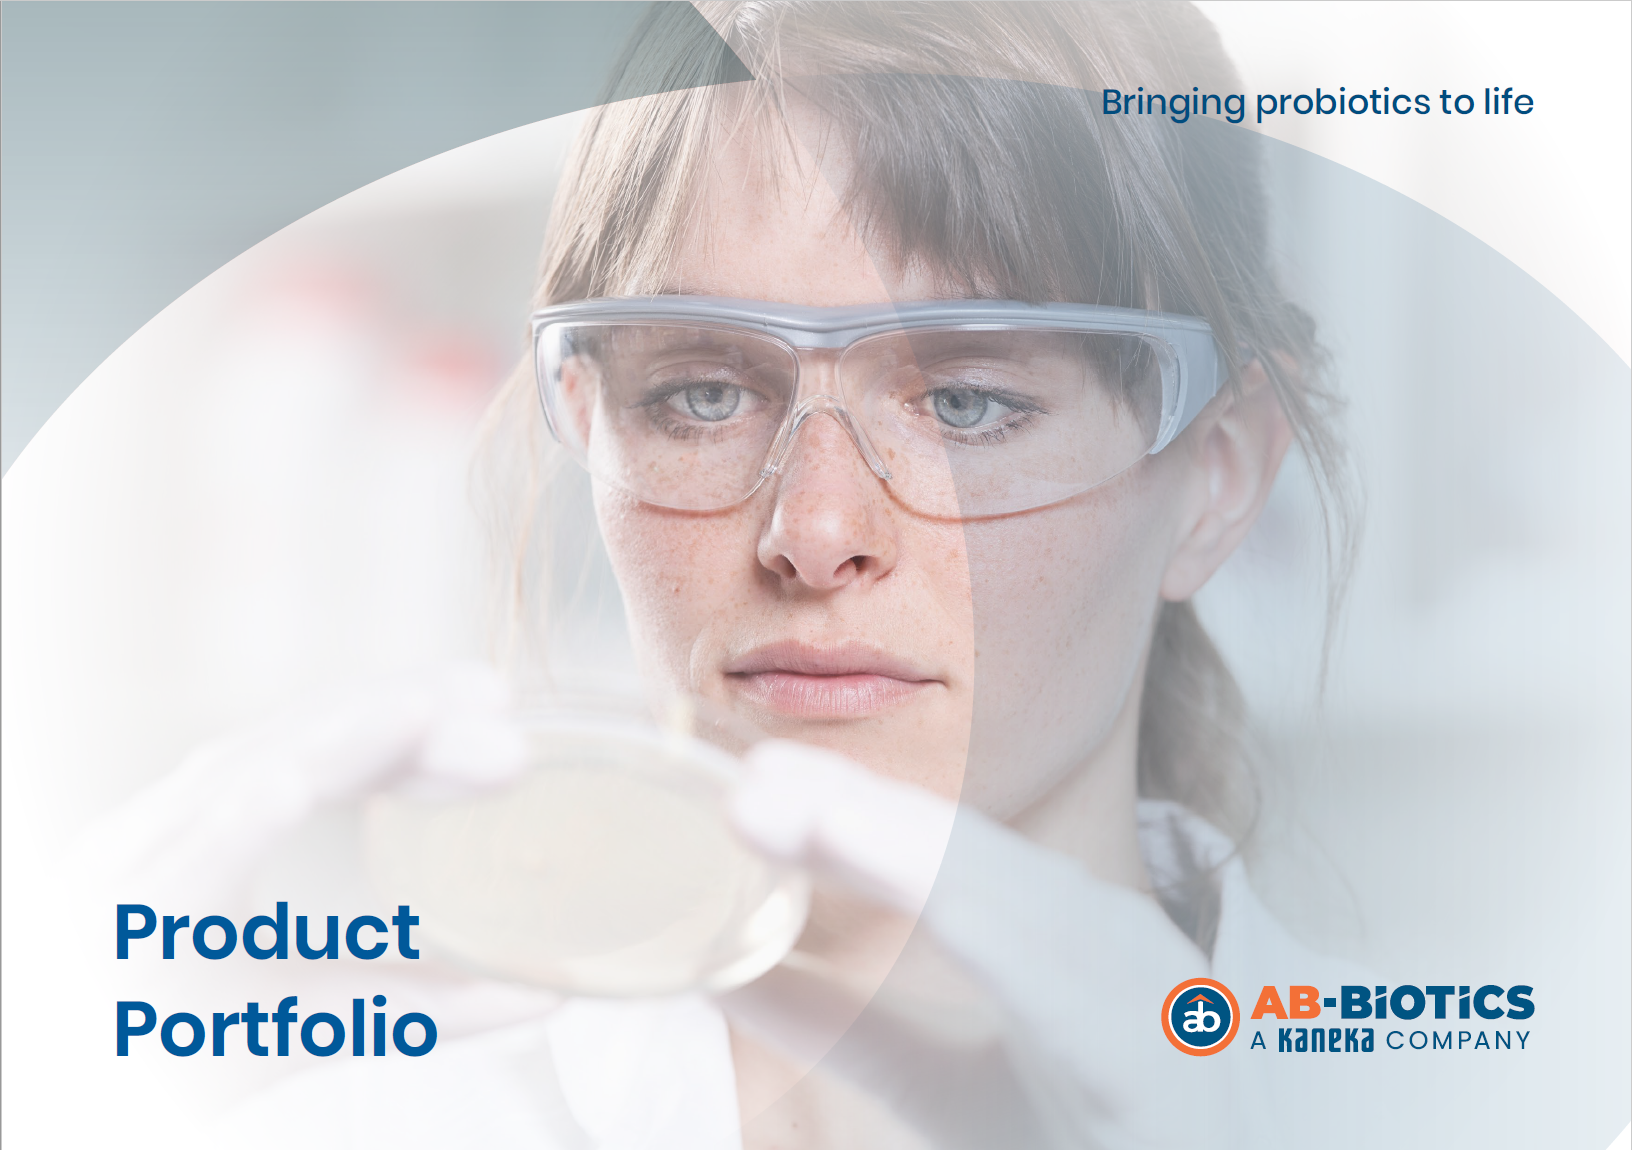 AB-BIOTICS Product portfolio